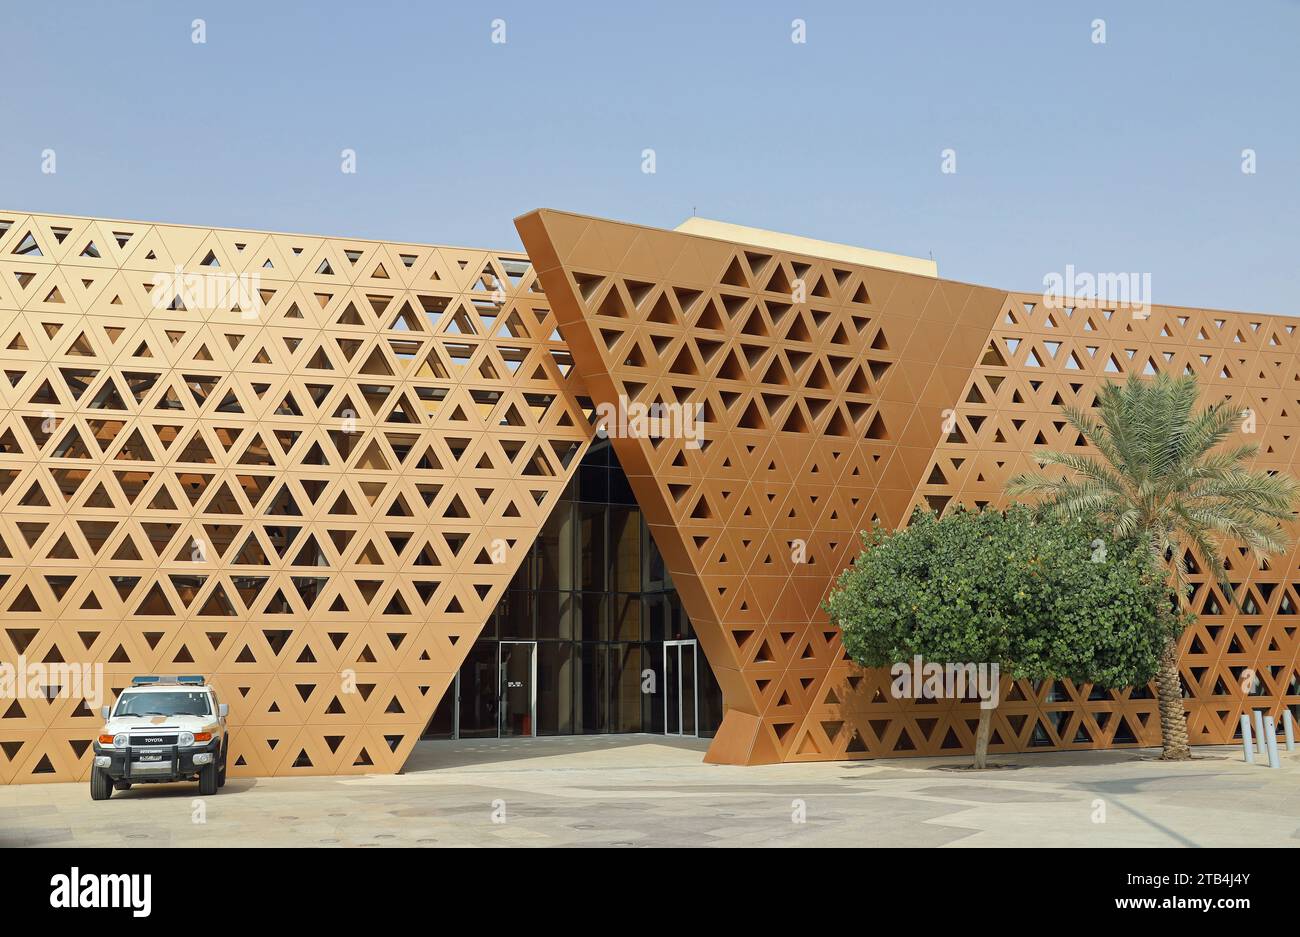 Preisgekröntes Gouvernementgebäude, entworfen von dar al Omran in Riad Stockfoto